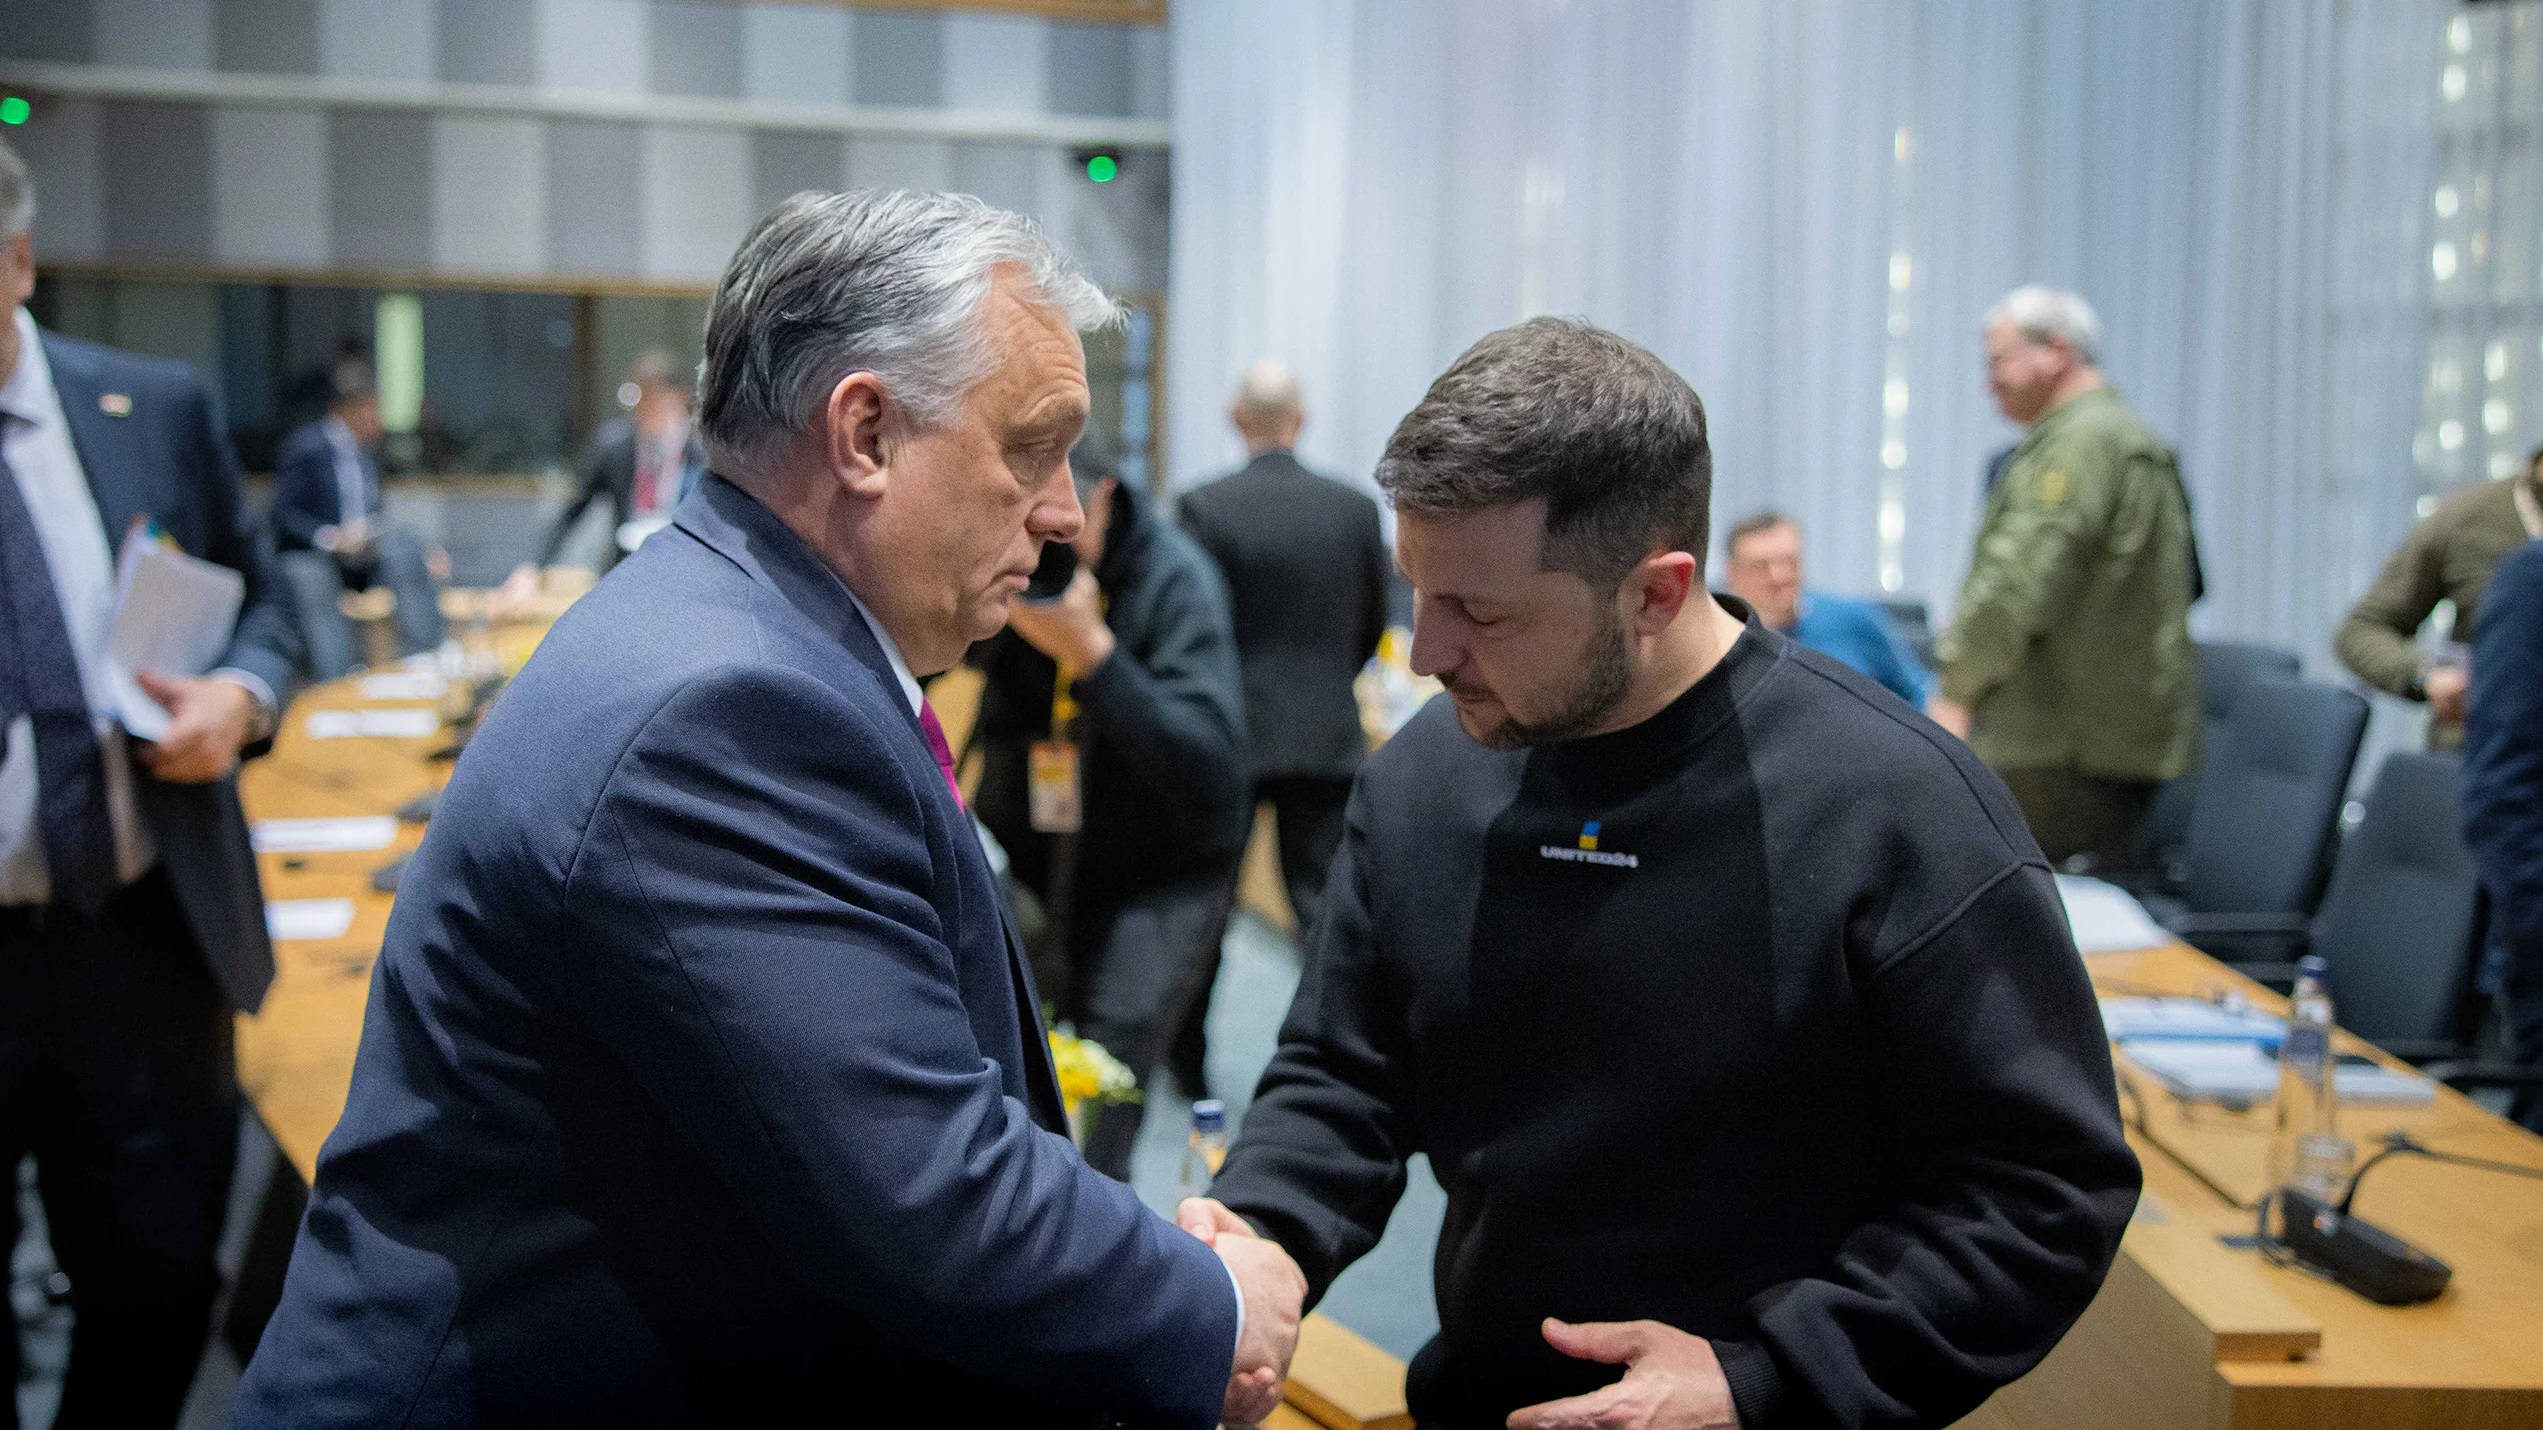 Viktor Orbán Meets Volodymyr Zelensky in Brussels